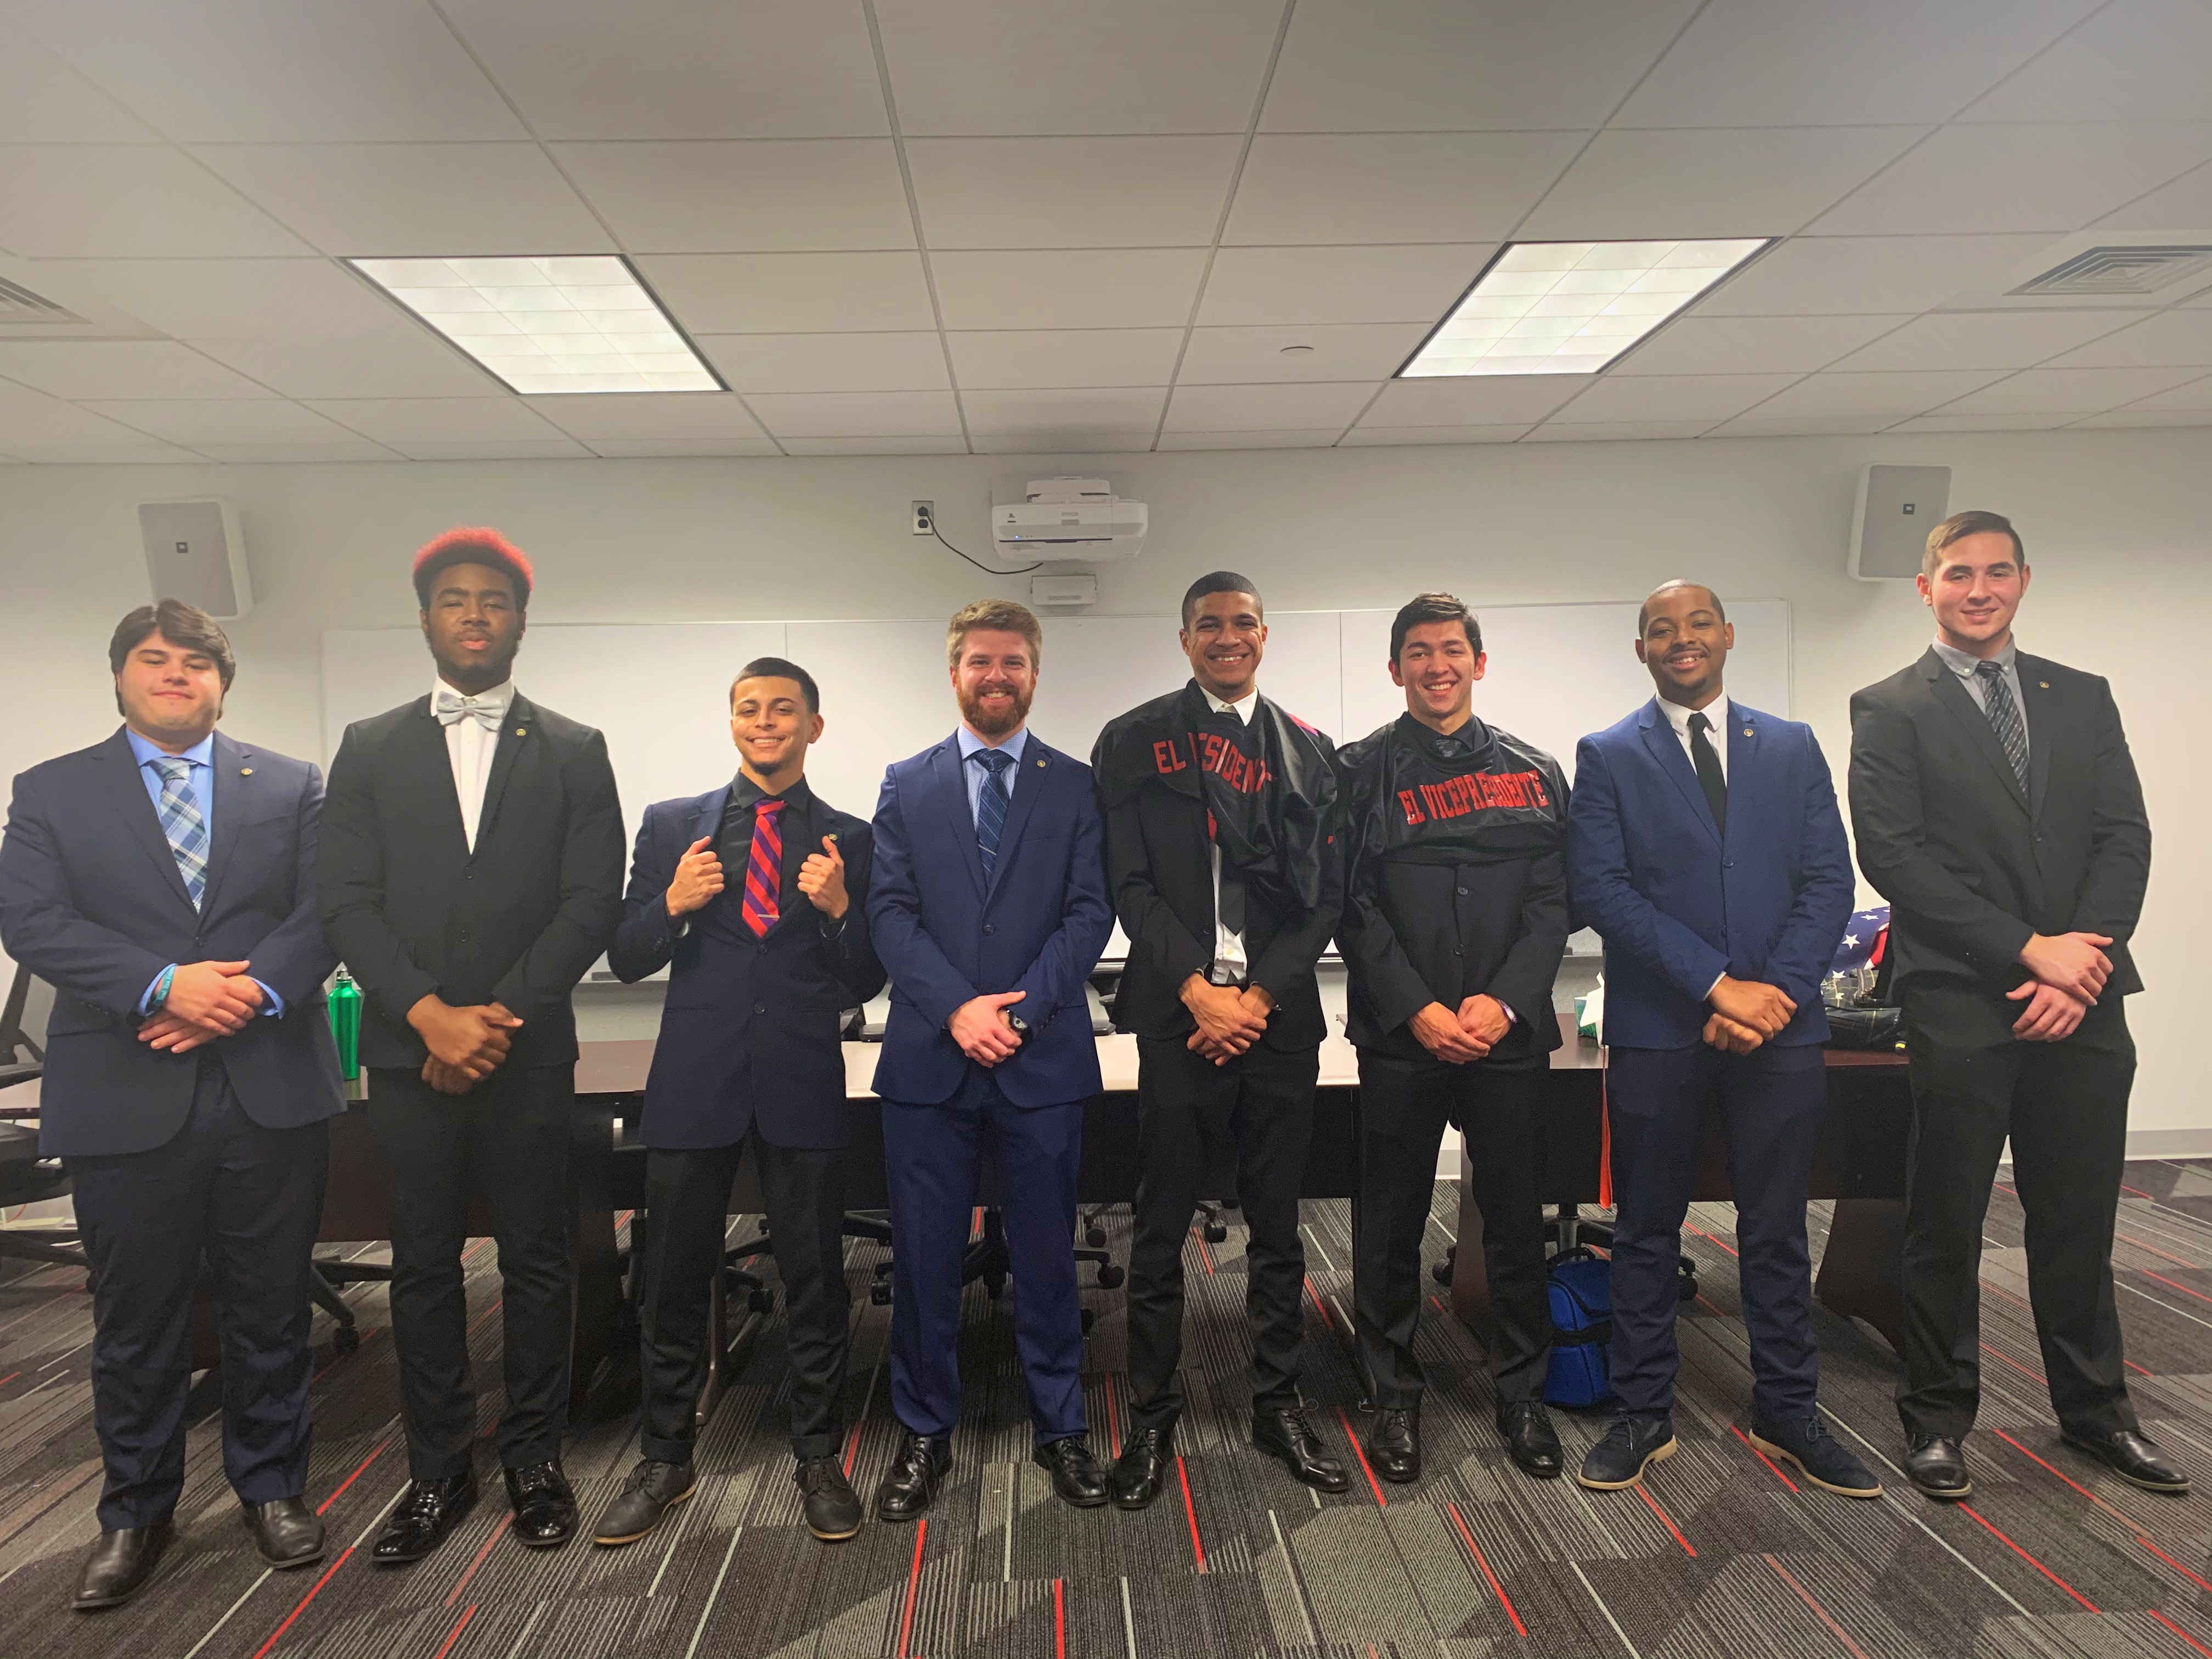 Picture of the 2019-2020 Sigma Phi Epsilon Executive Board